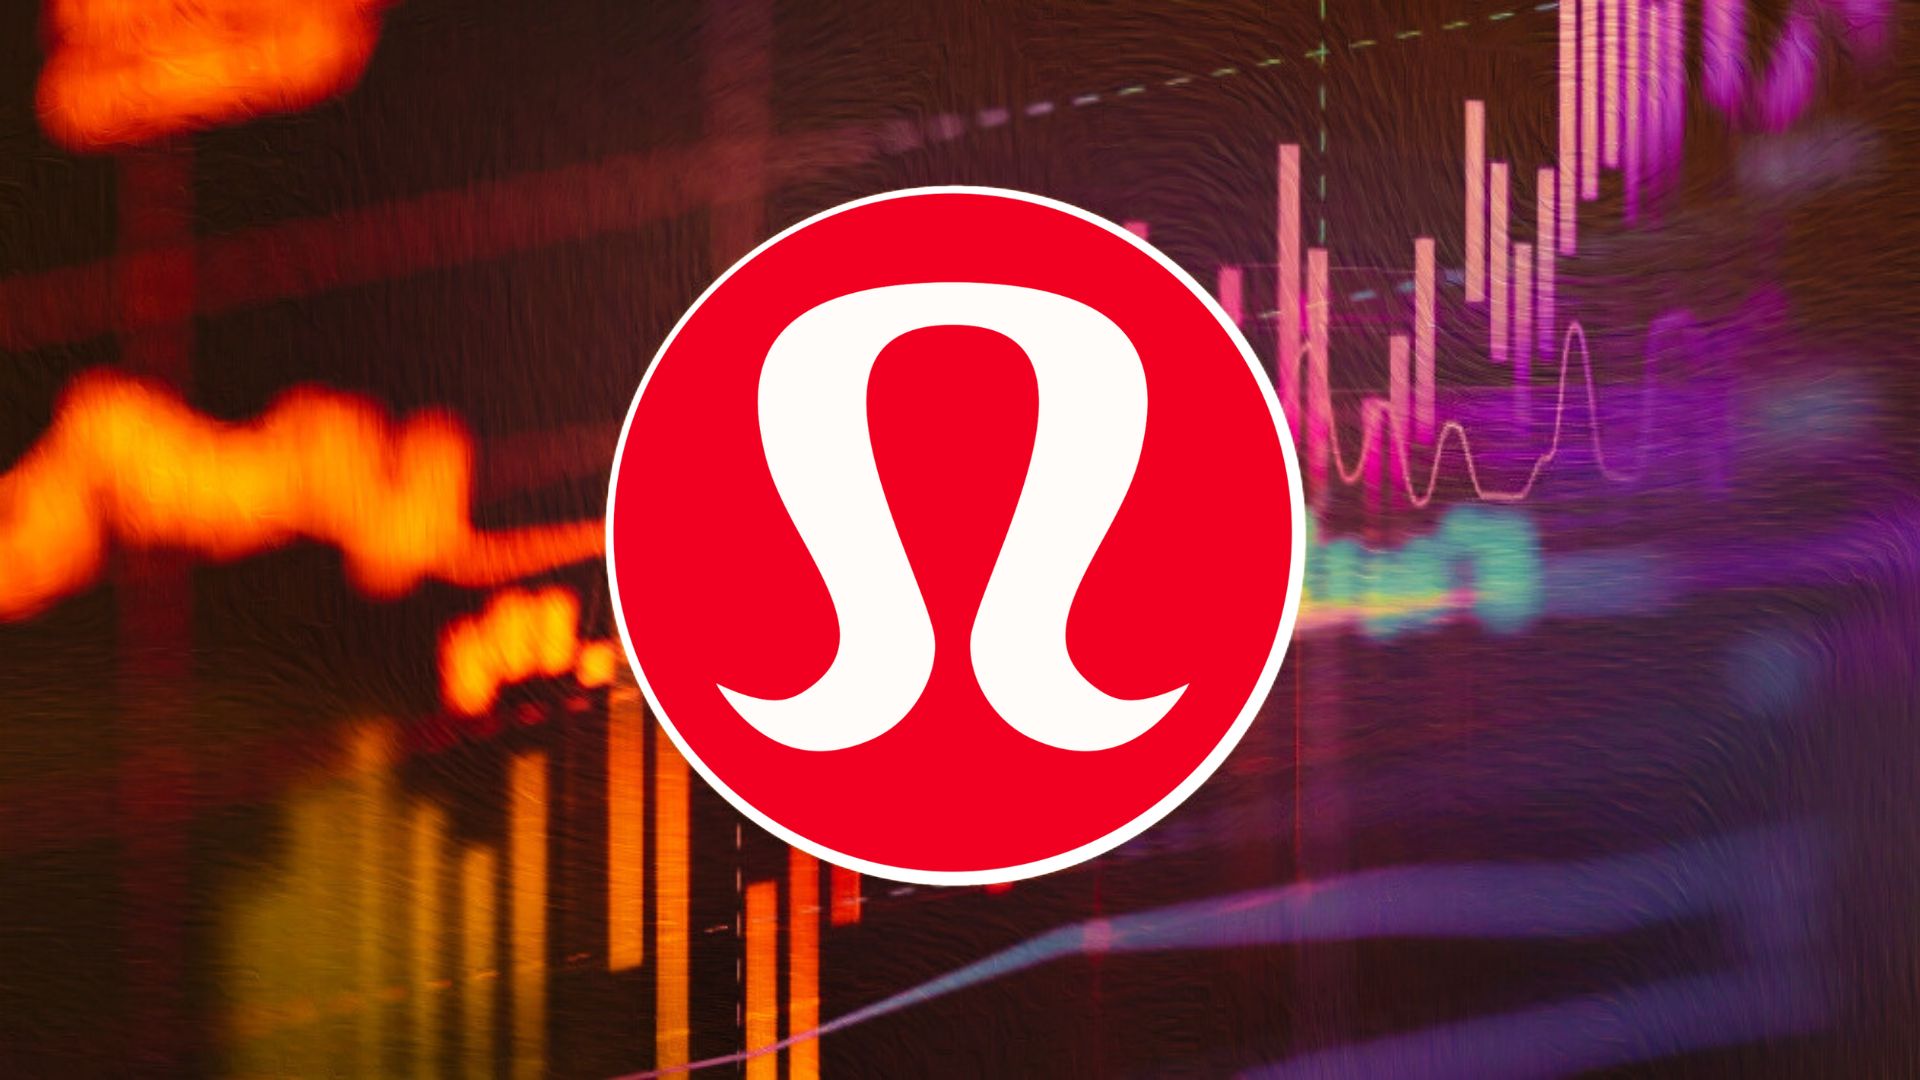 Lululemon Athletica (LULU) Stock Price, News & Analysis